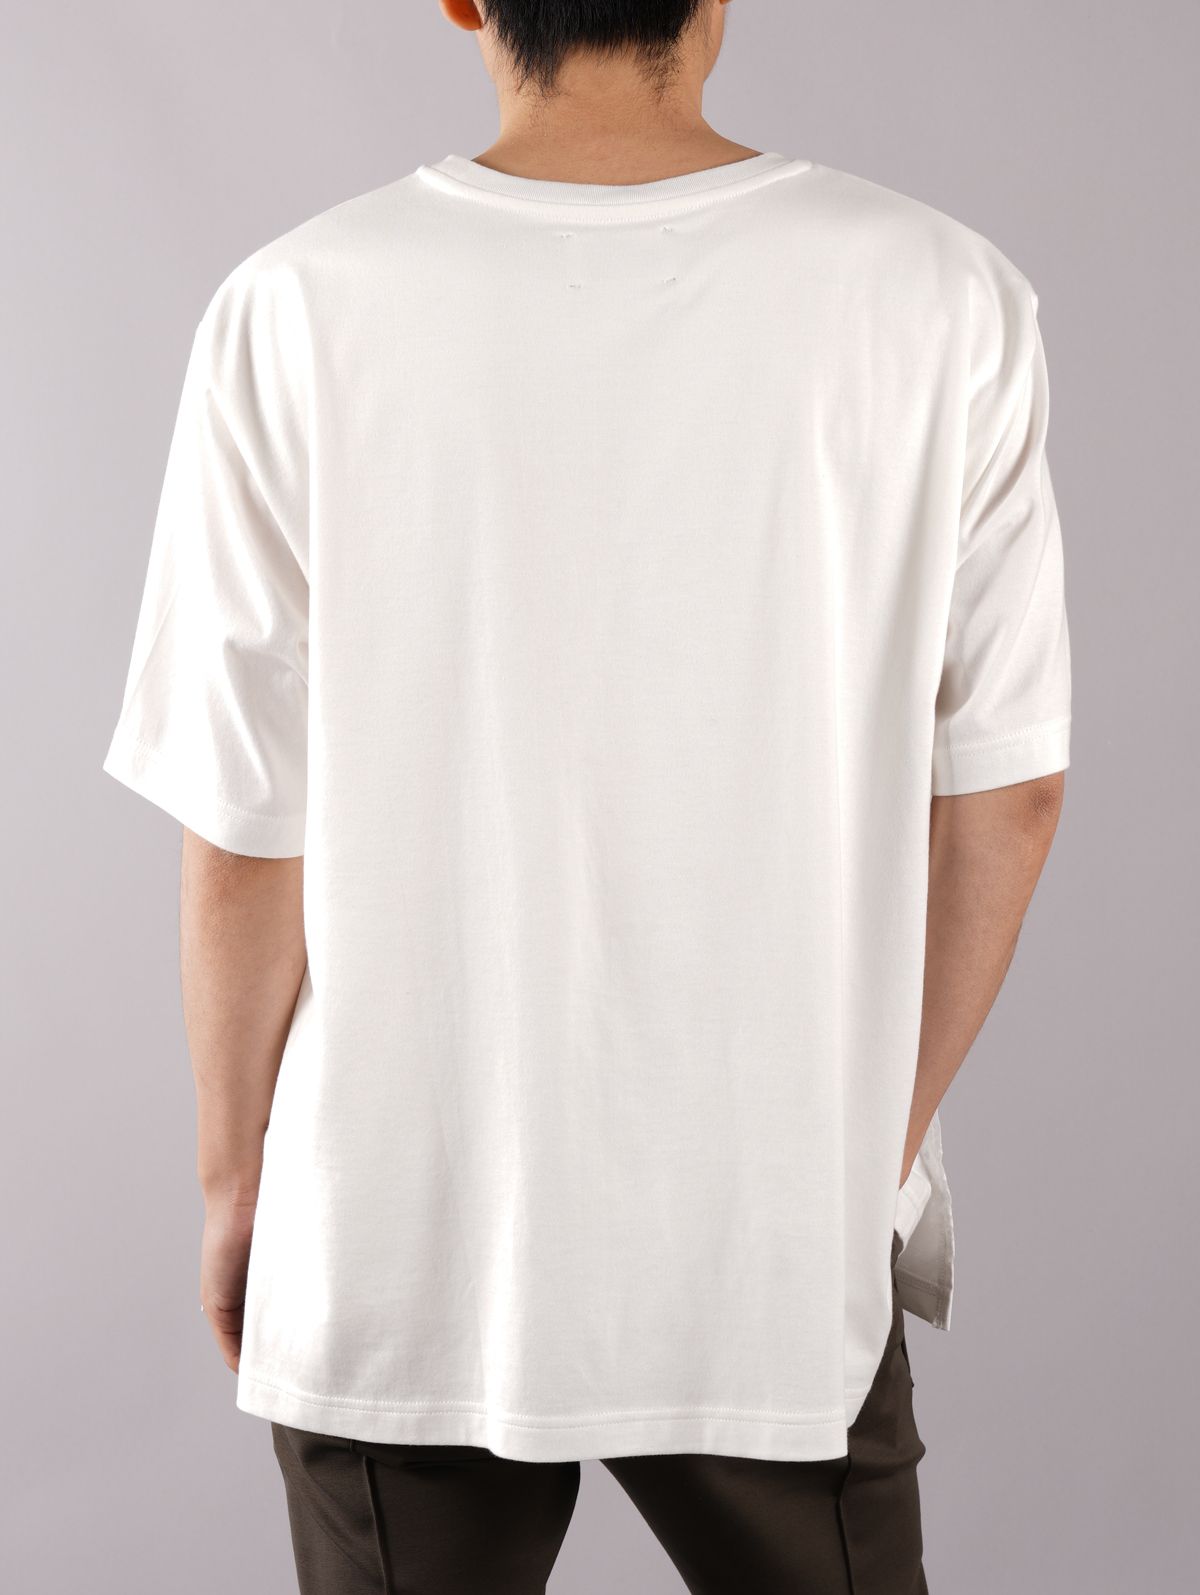 TAAKK - 【ラスト1点】LAYERED T-SHIRTS / レイヤード Tシャツ 